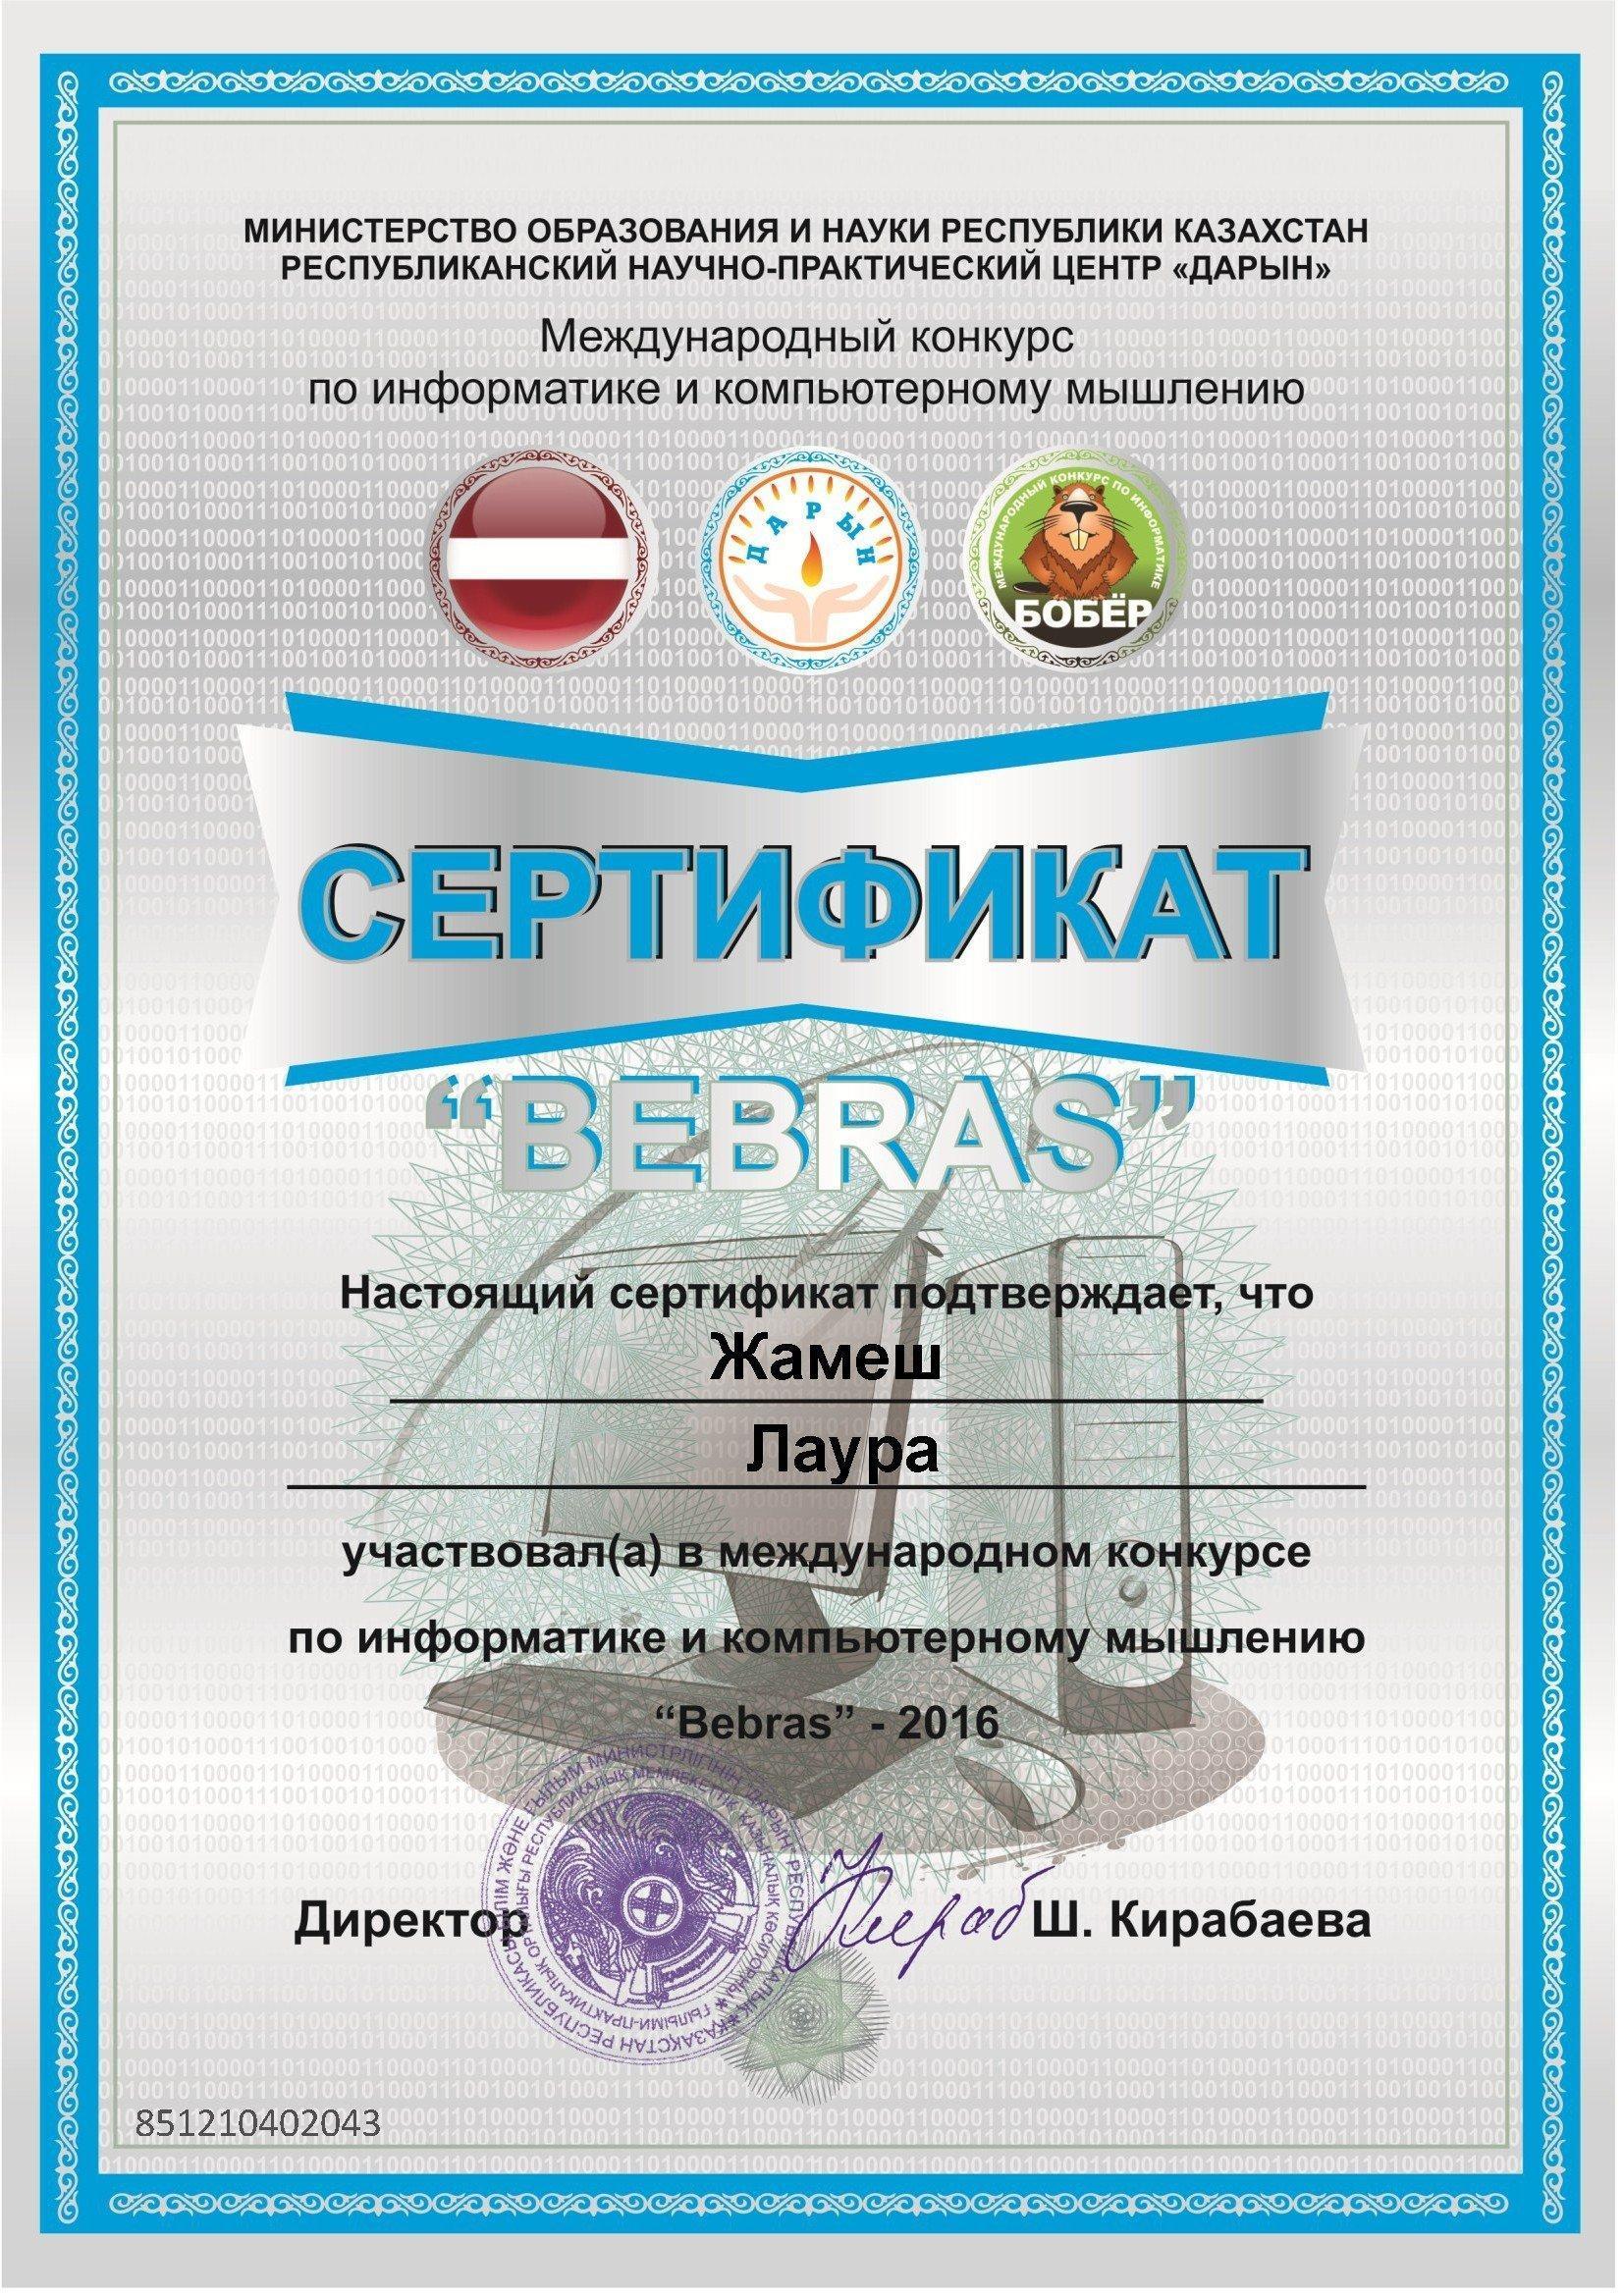 сертификат "Bebras"